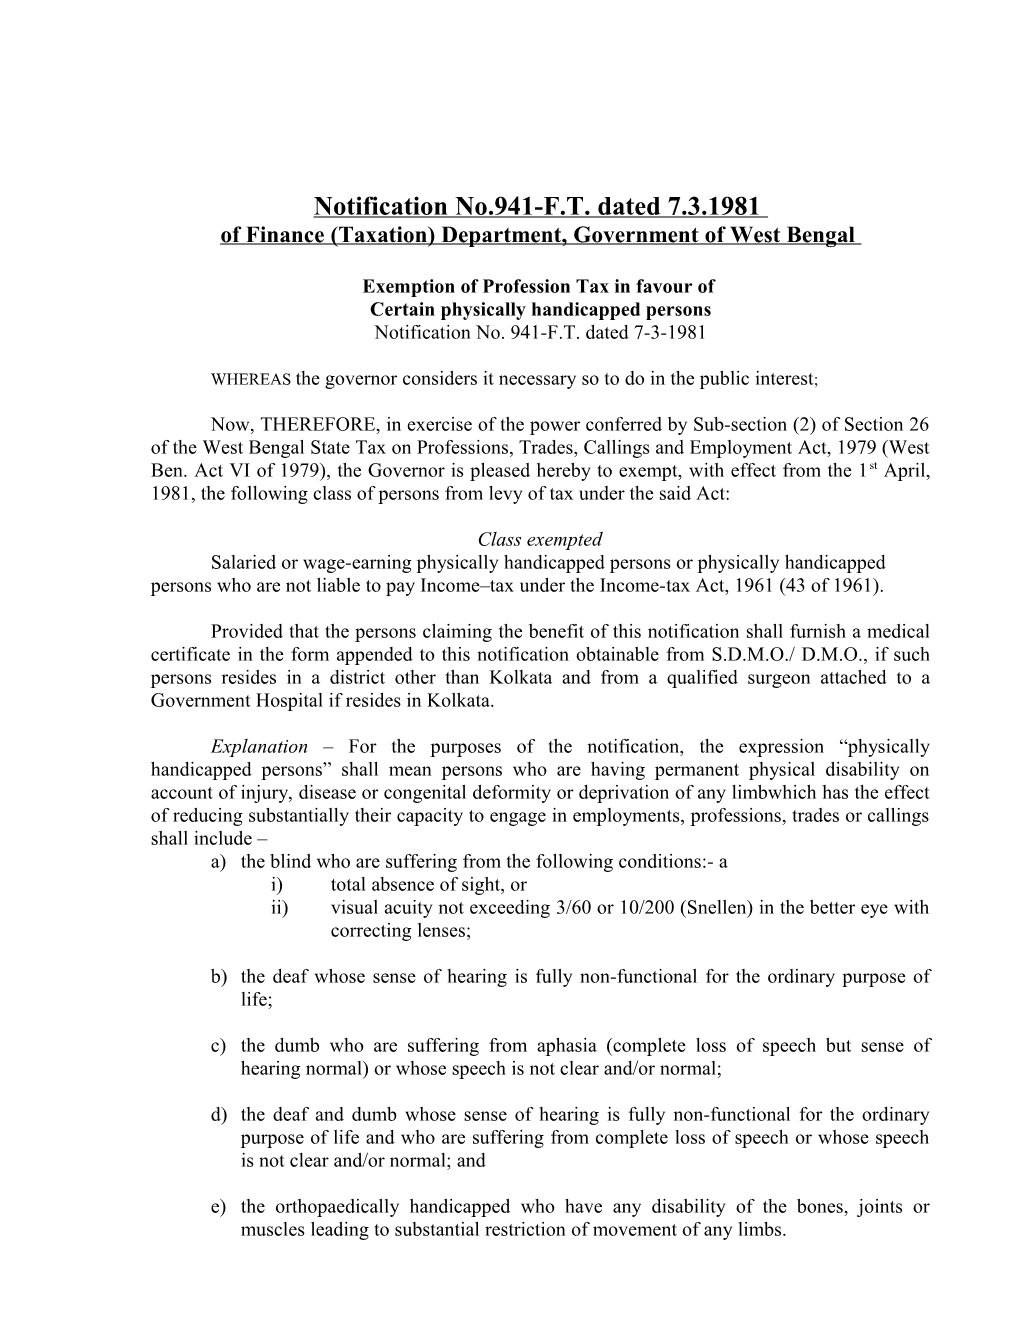 Extract of Appendix II Regarding Notifications U/S